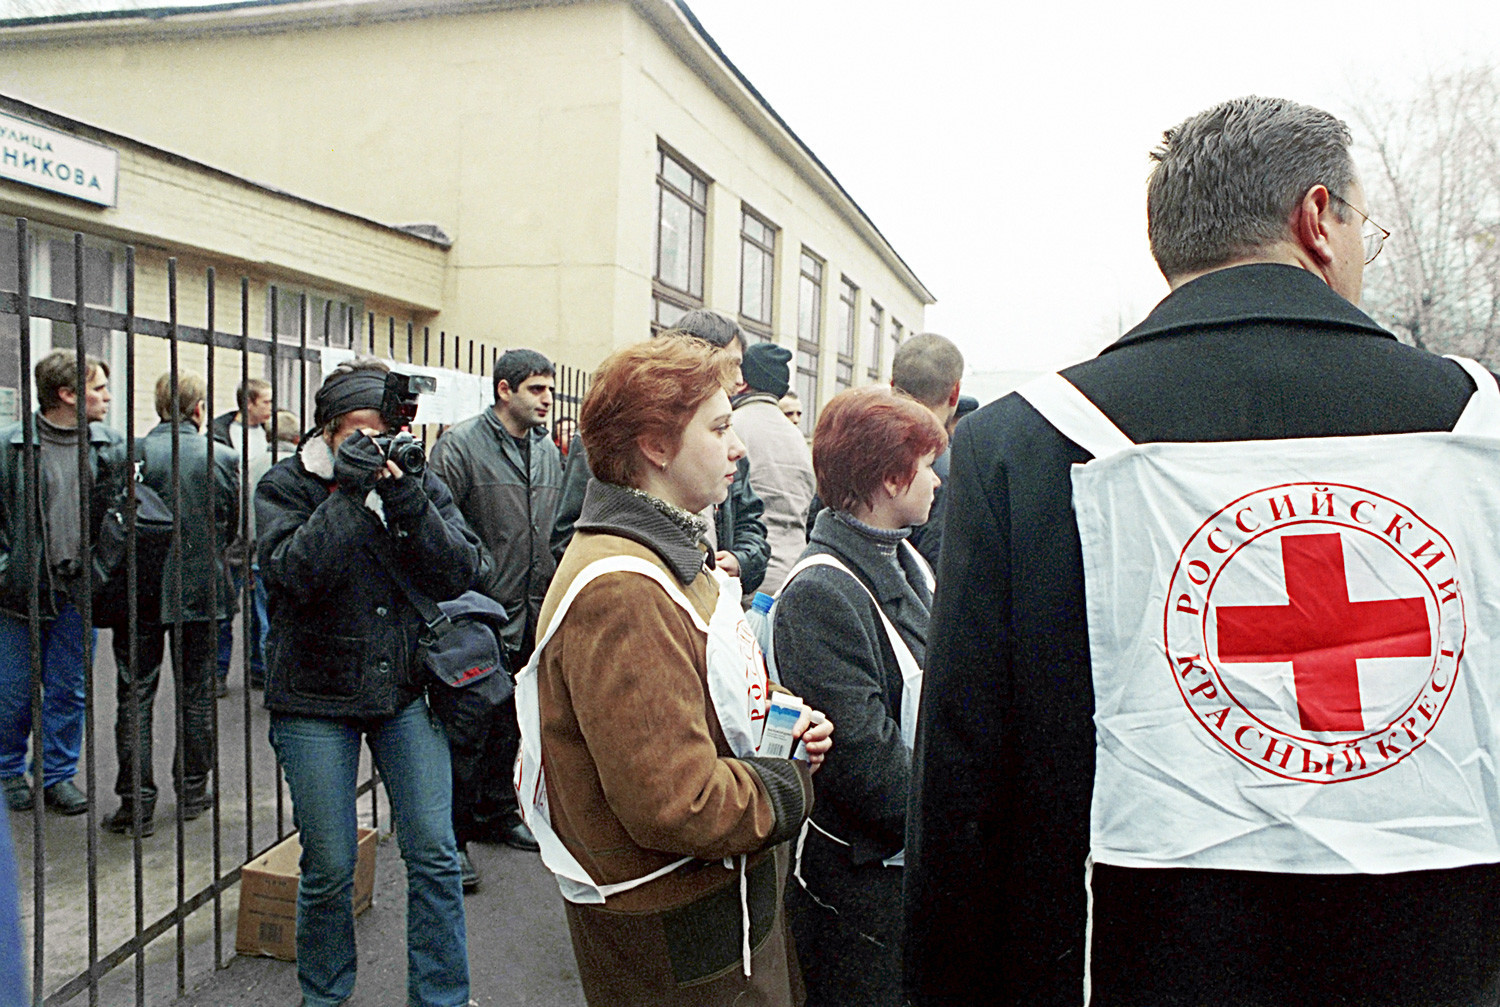 Funcionários da Cruz Vermelha no teatro Dubrovka, em Moscou, onde terroristas tchetchenos fizeram reféns durante o espetáculo “Nord-Ost” em 2002